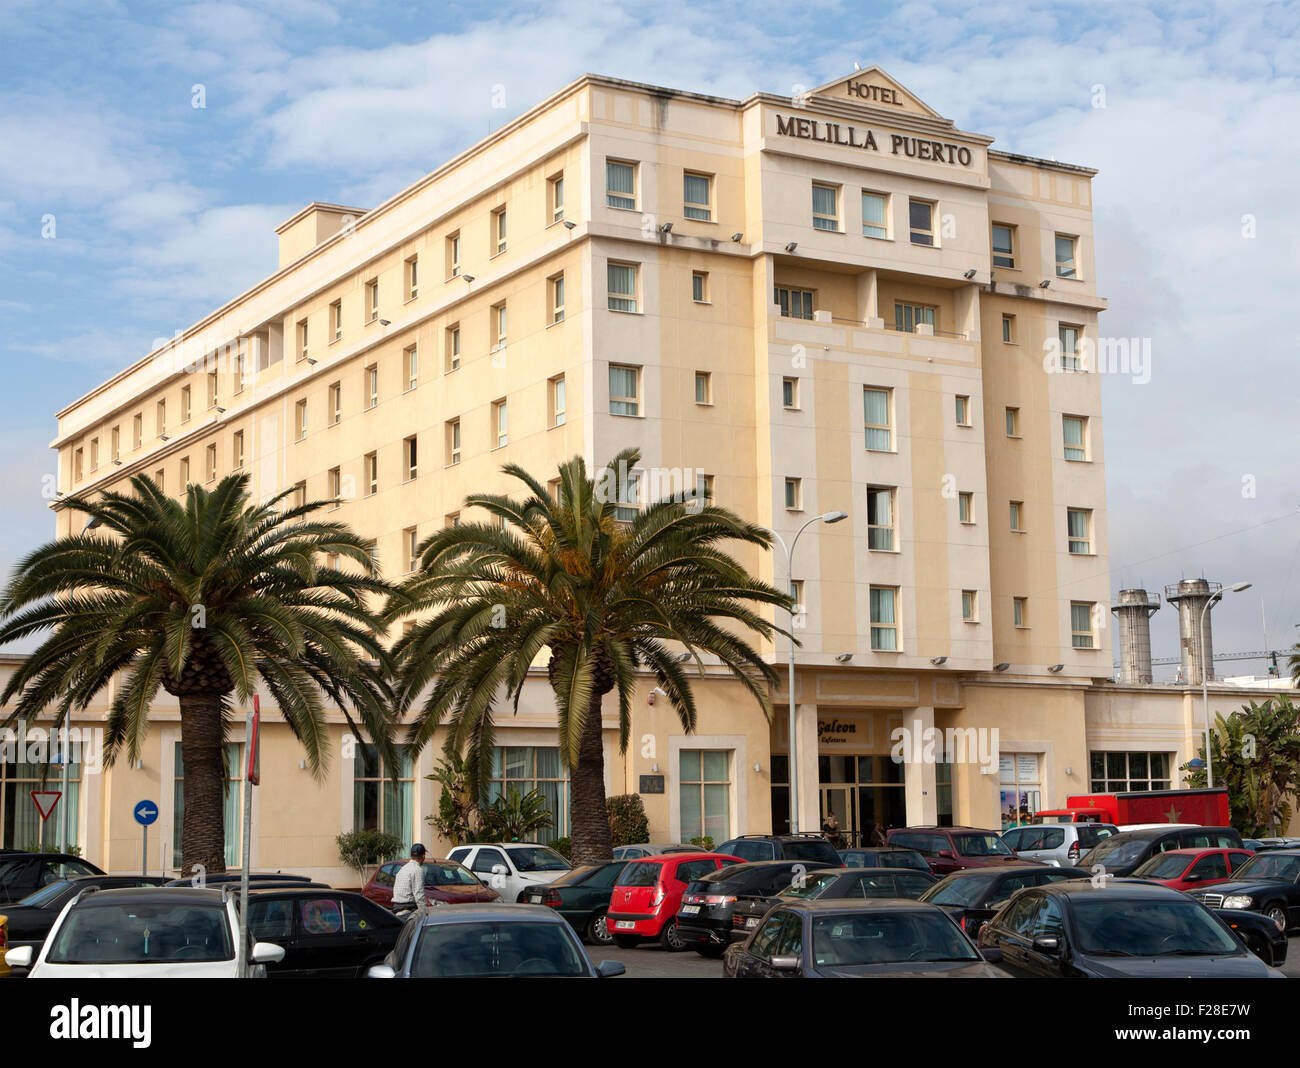 Hotel melilla puerto fotografías e imágenes de alta resolución - Alamy